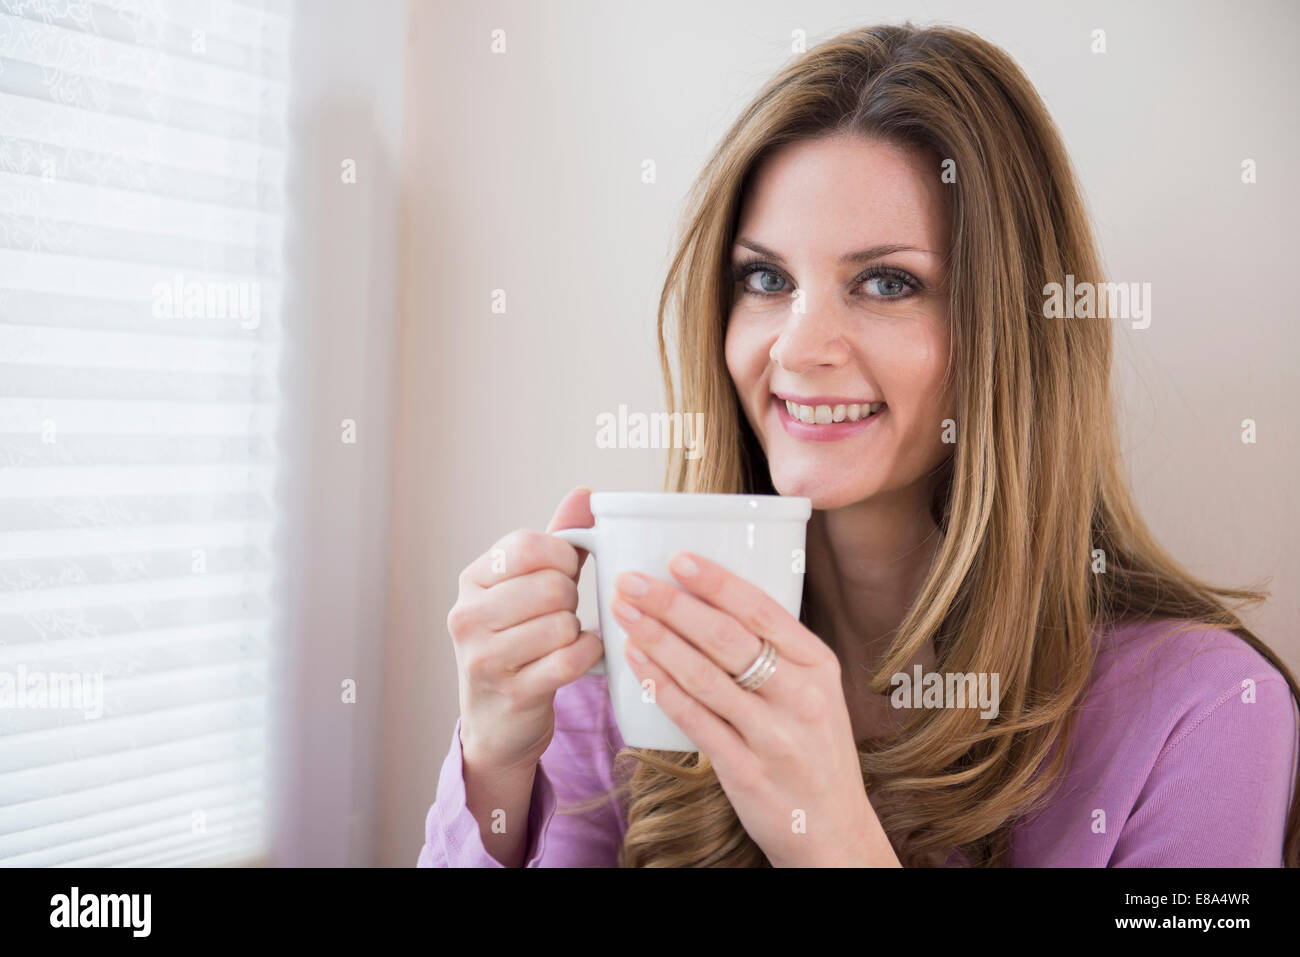 Smiling mature woman holding cup à la fenêtre Banque D'Images